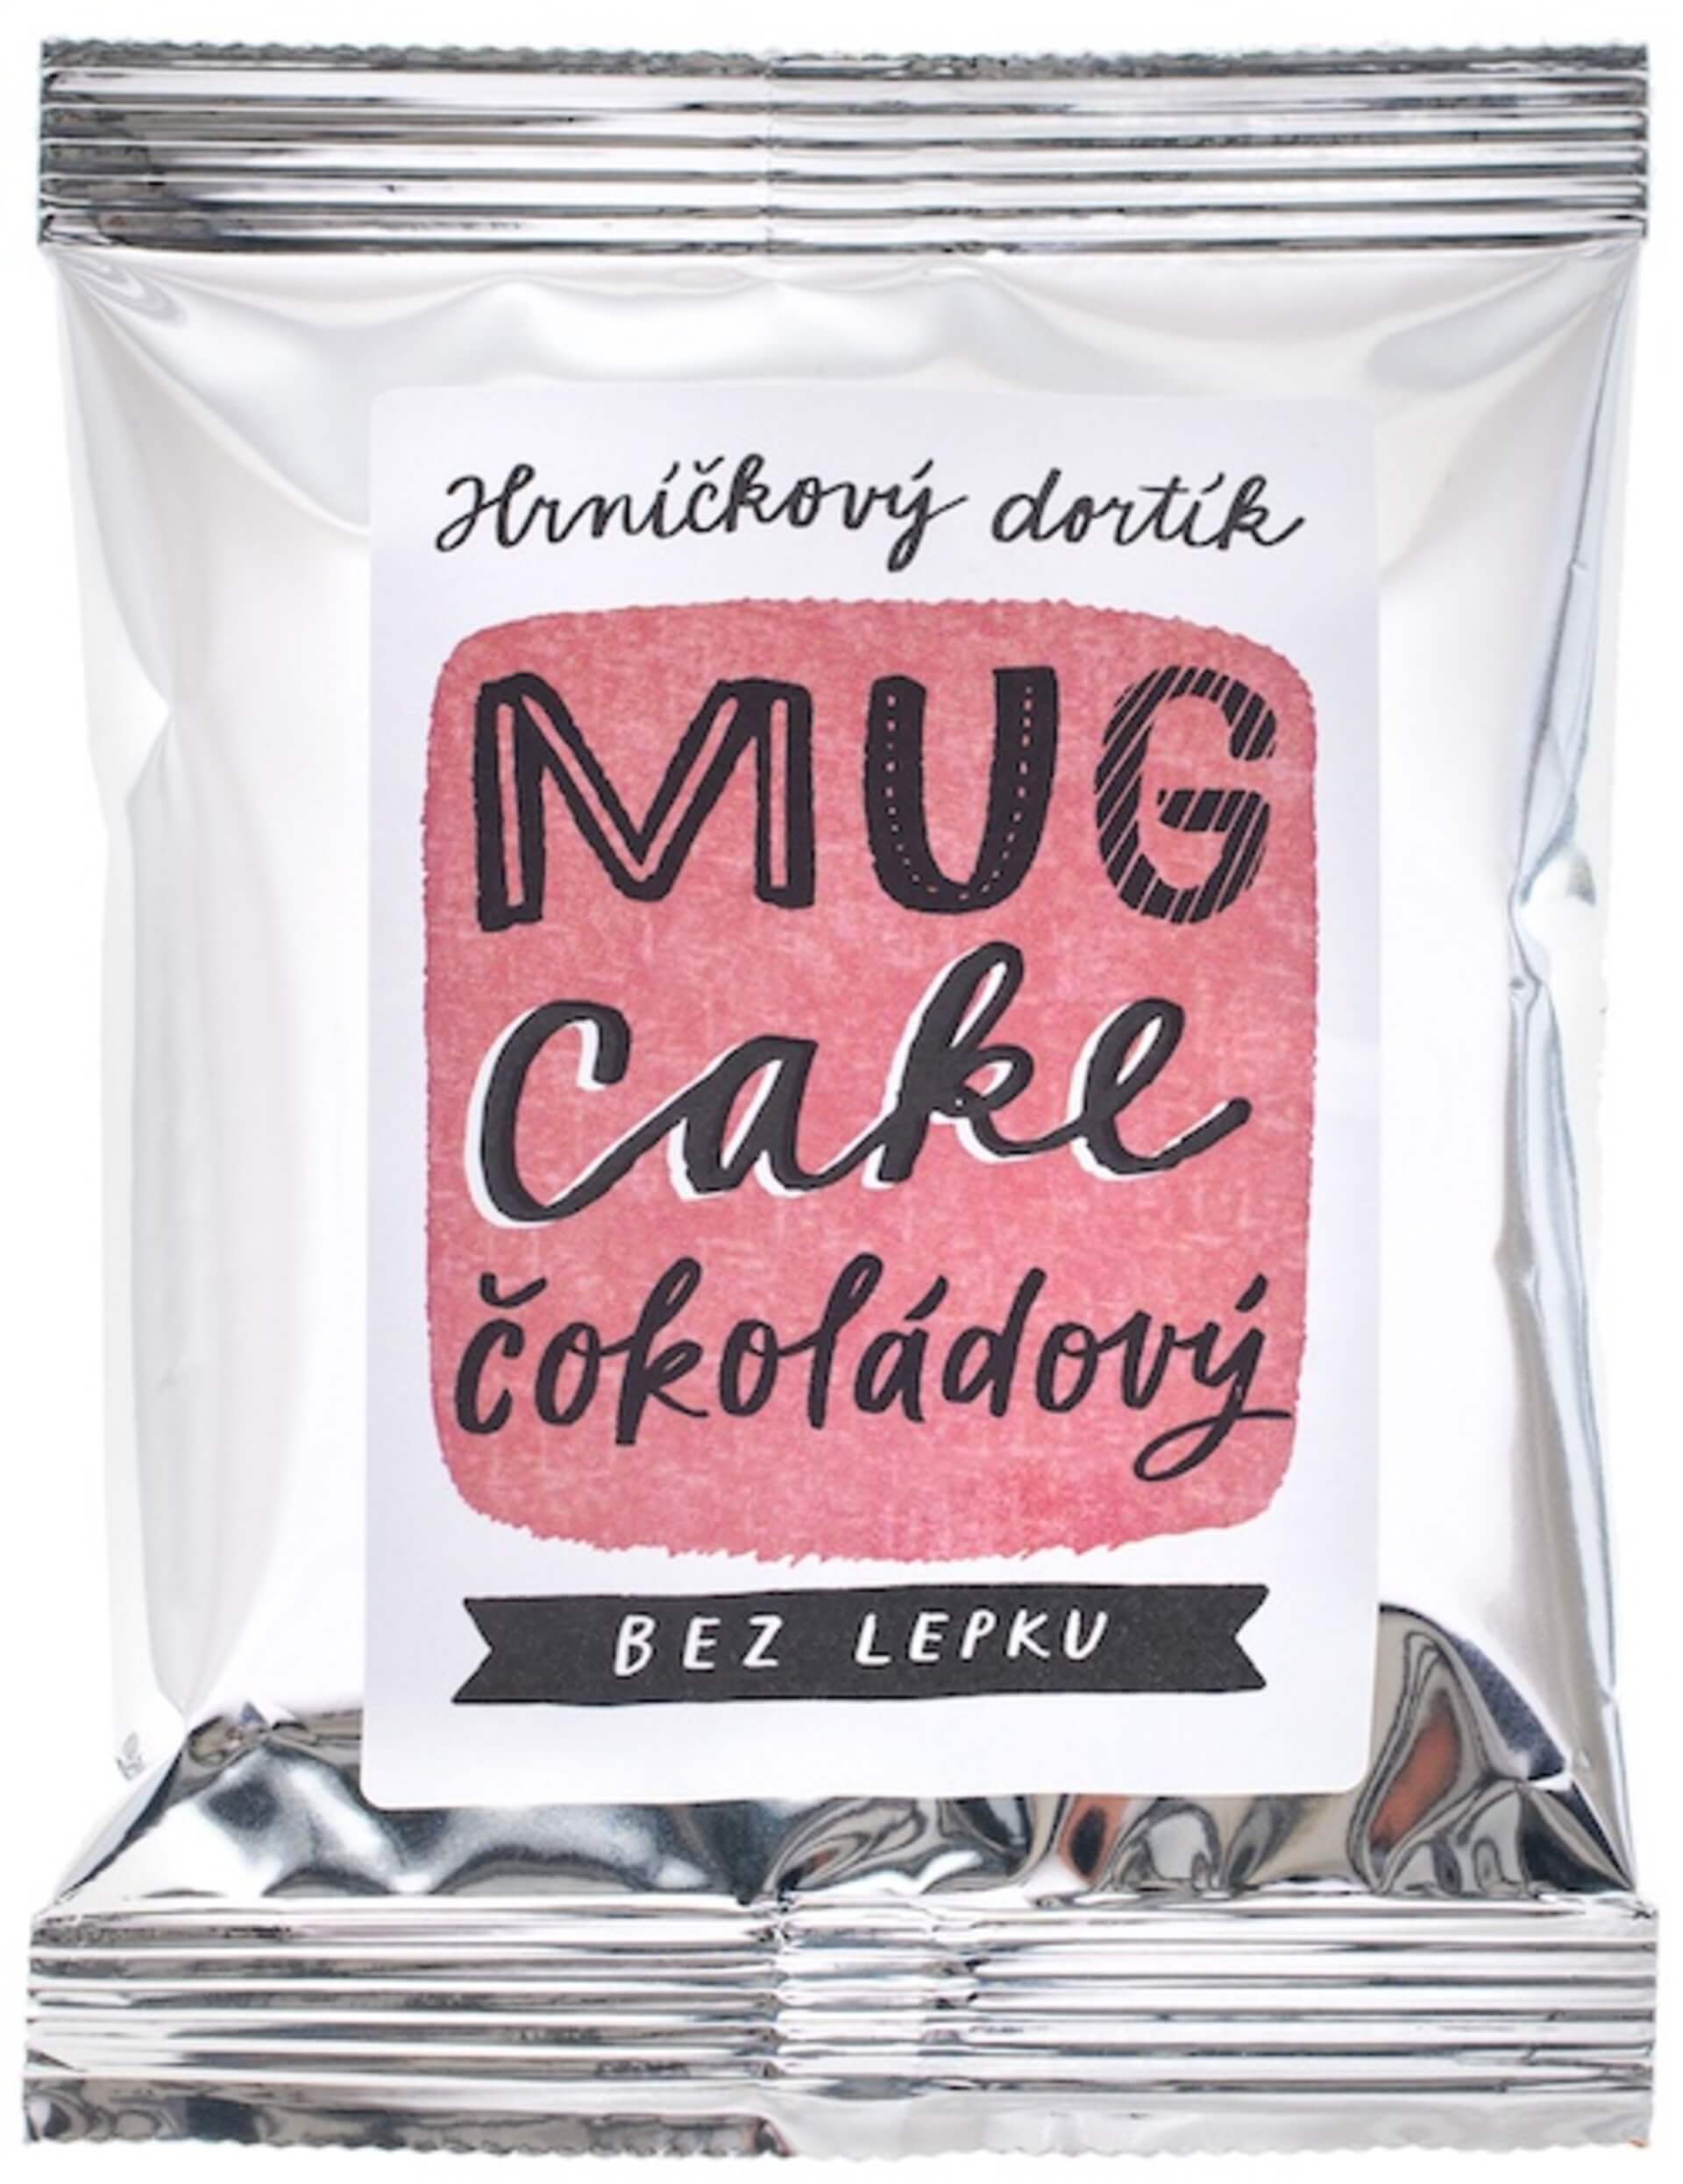 E-shop Nominal MUG CAKE hrnčeková tortička čokládový 60 g